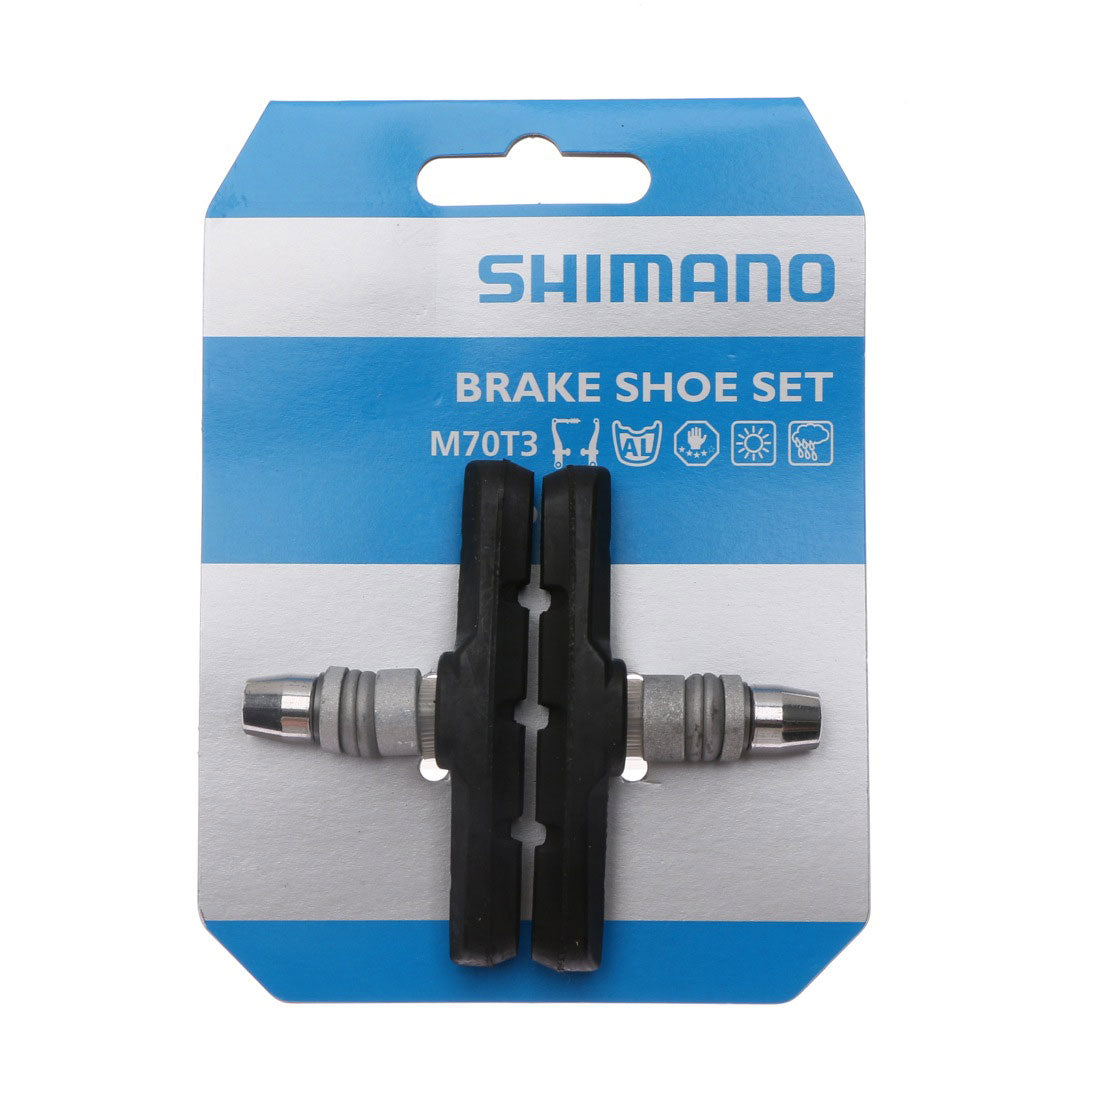 SHIMANO Brake Shoe Set (M70T3)